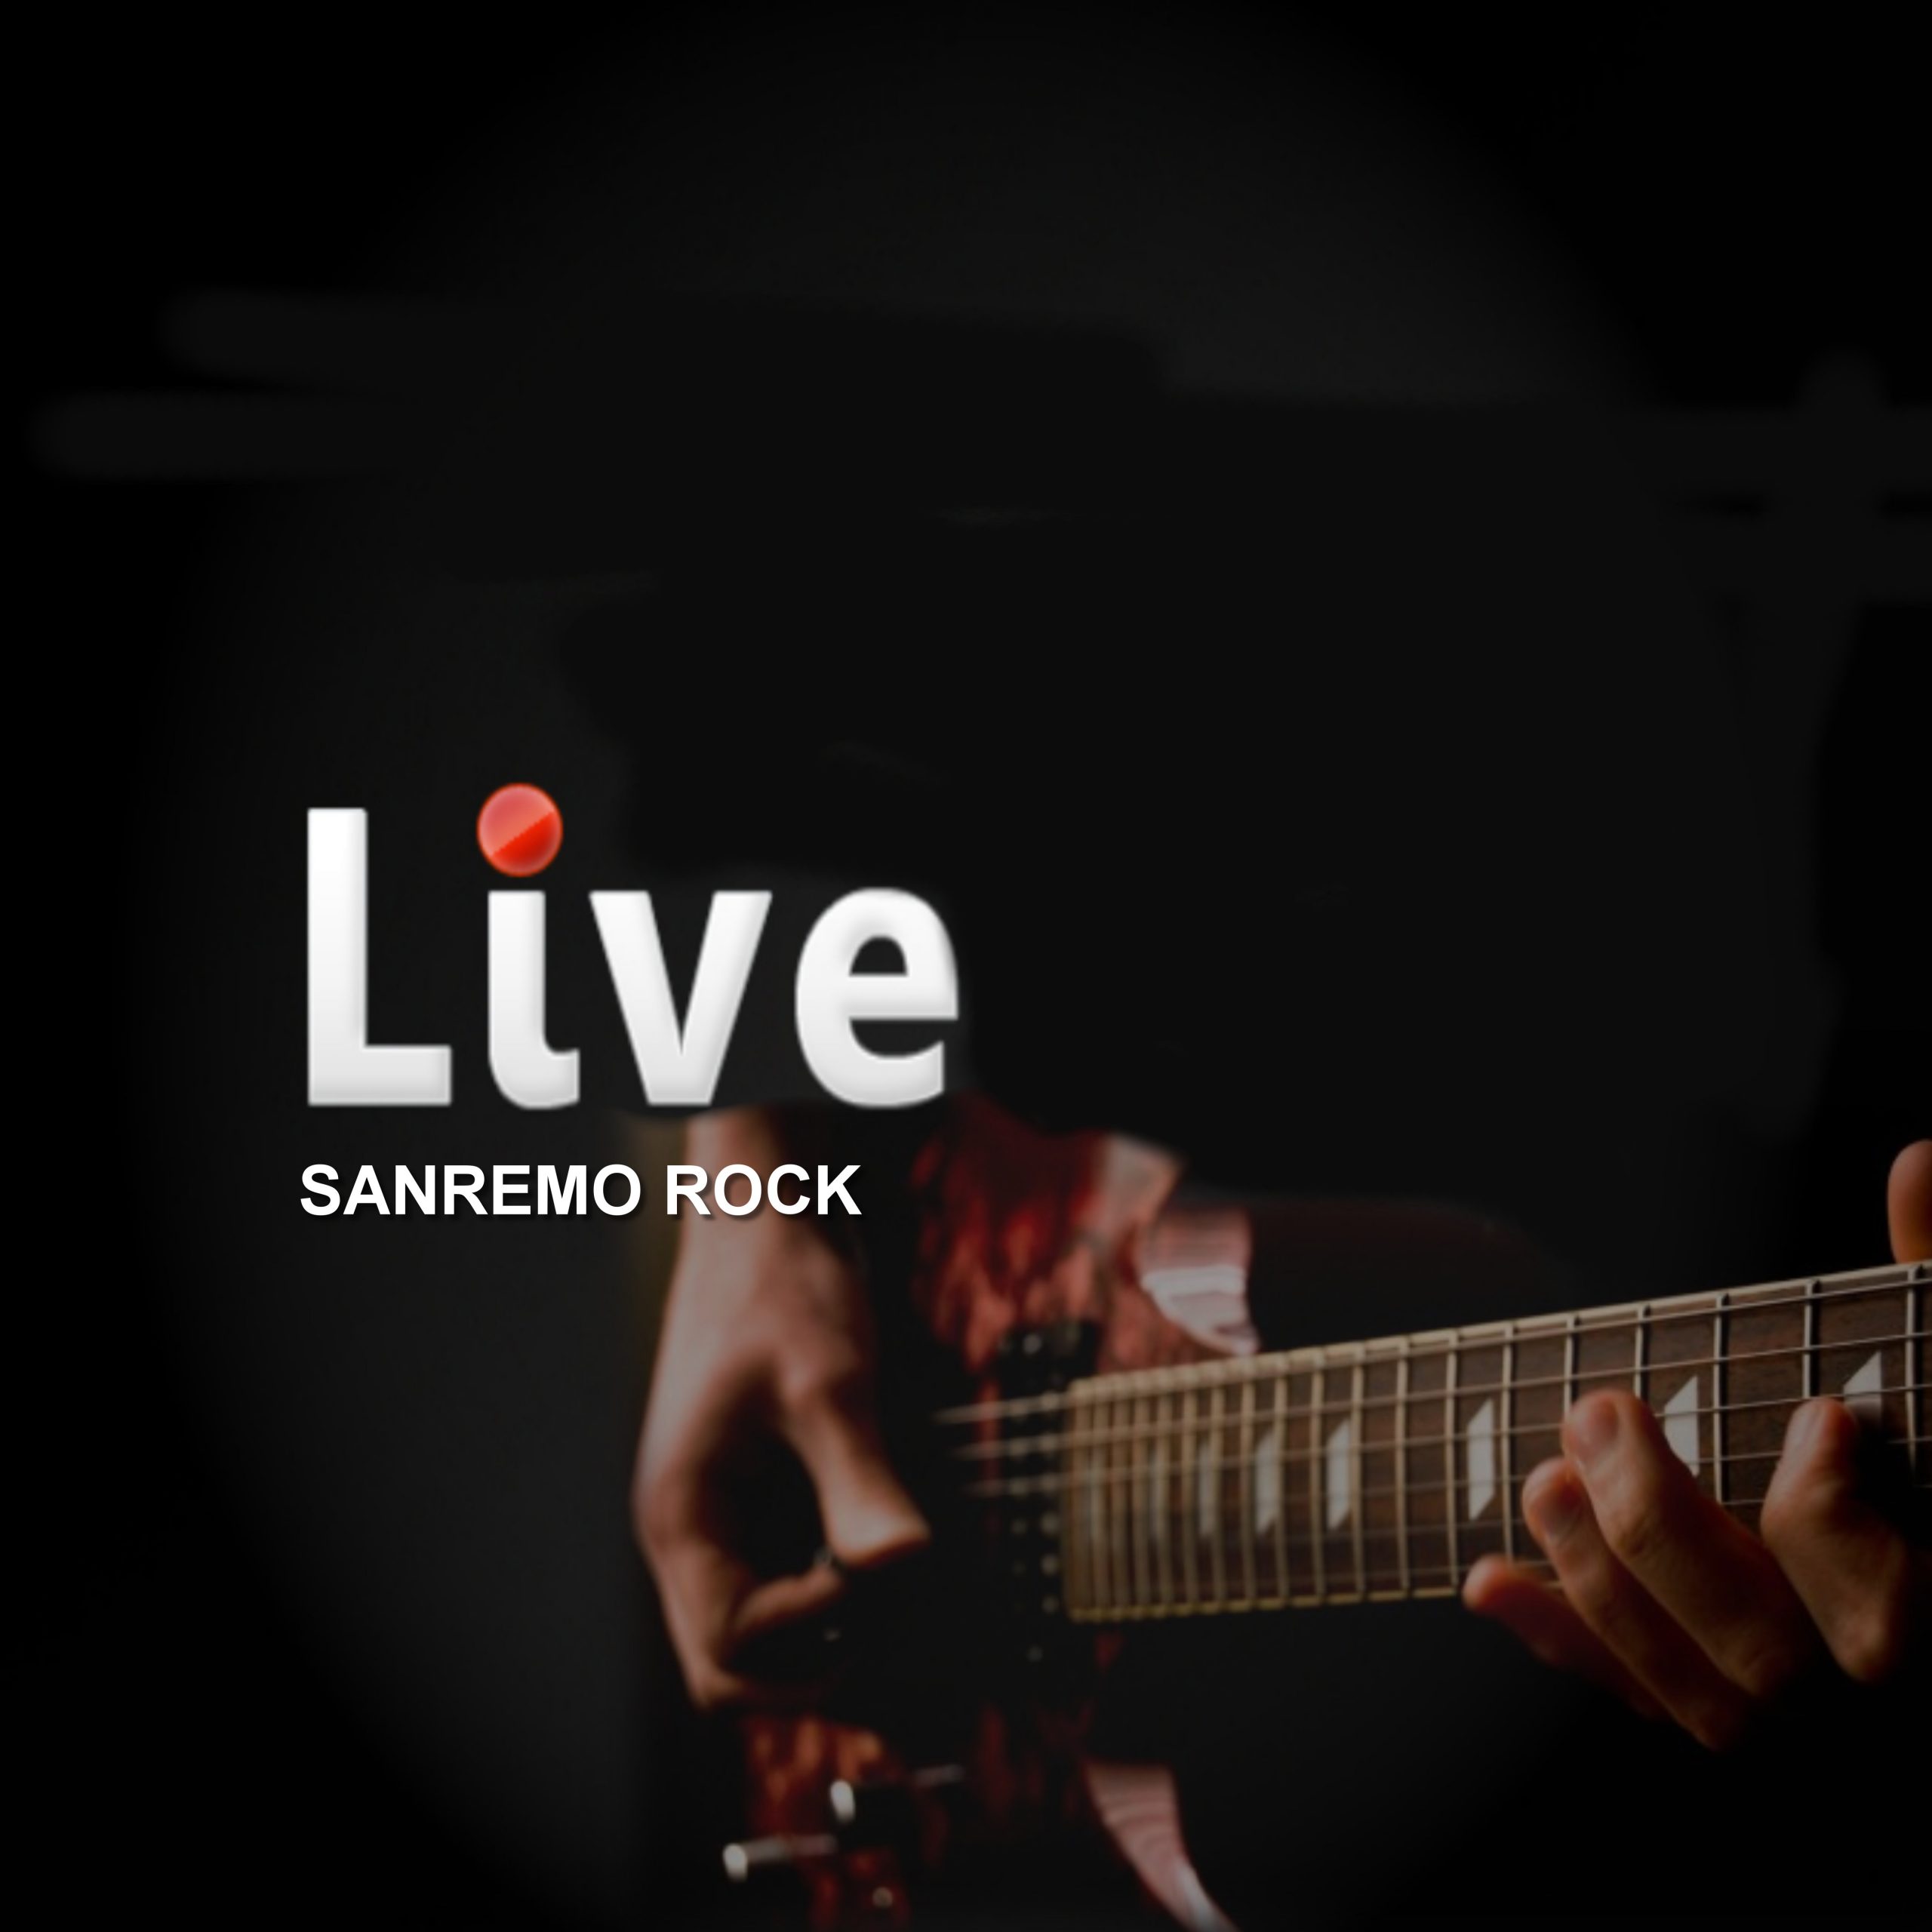 Video live 1^ tappa del tour Sanremo rock in Accademia Portogruaro